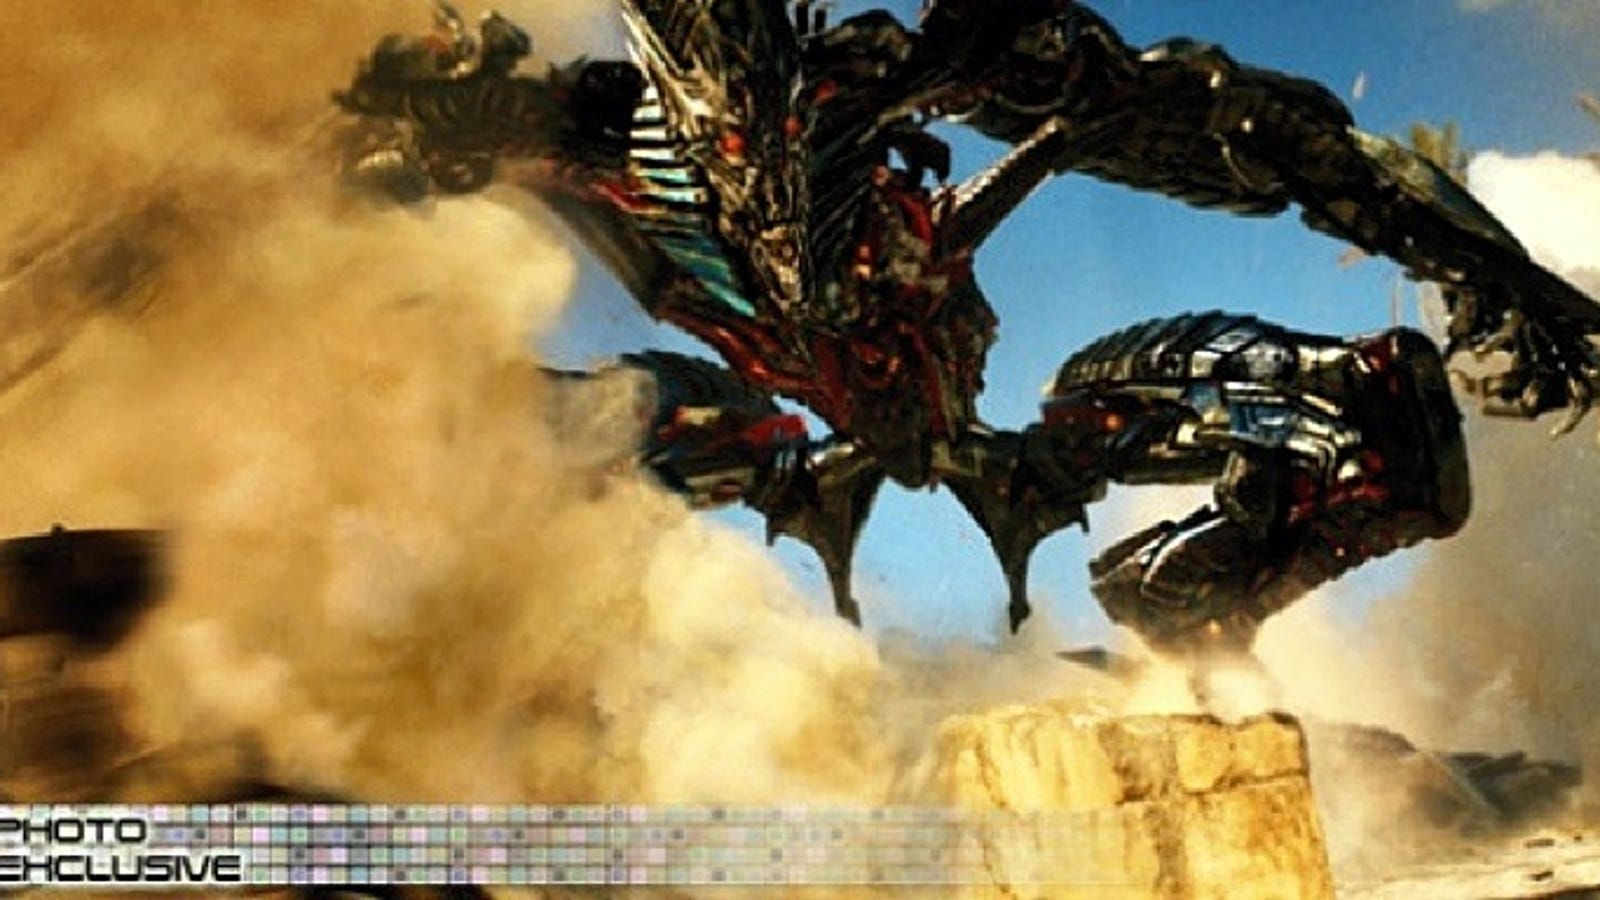 The Fallen Of Transformers Revenge Of The Fallen Fame Revealed In Full 8394